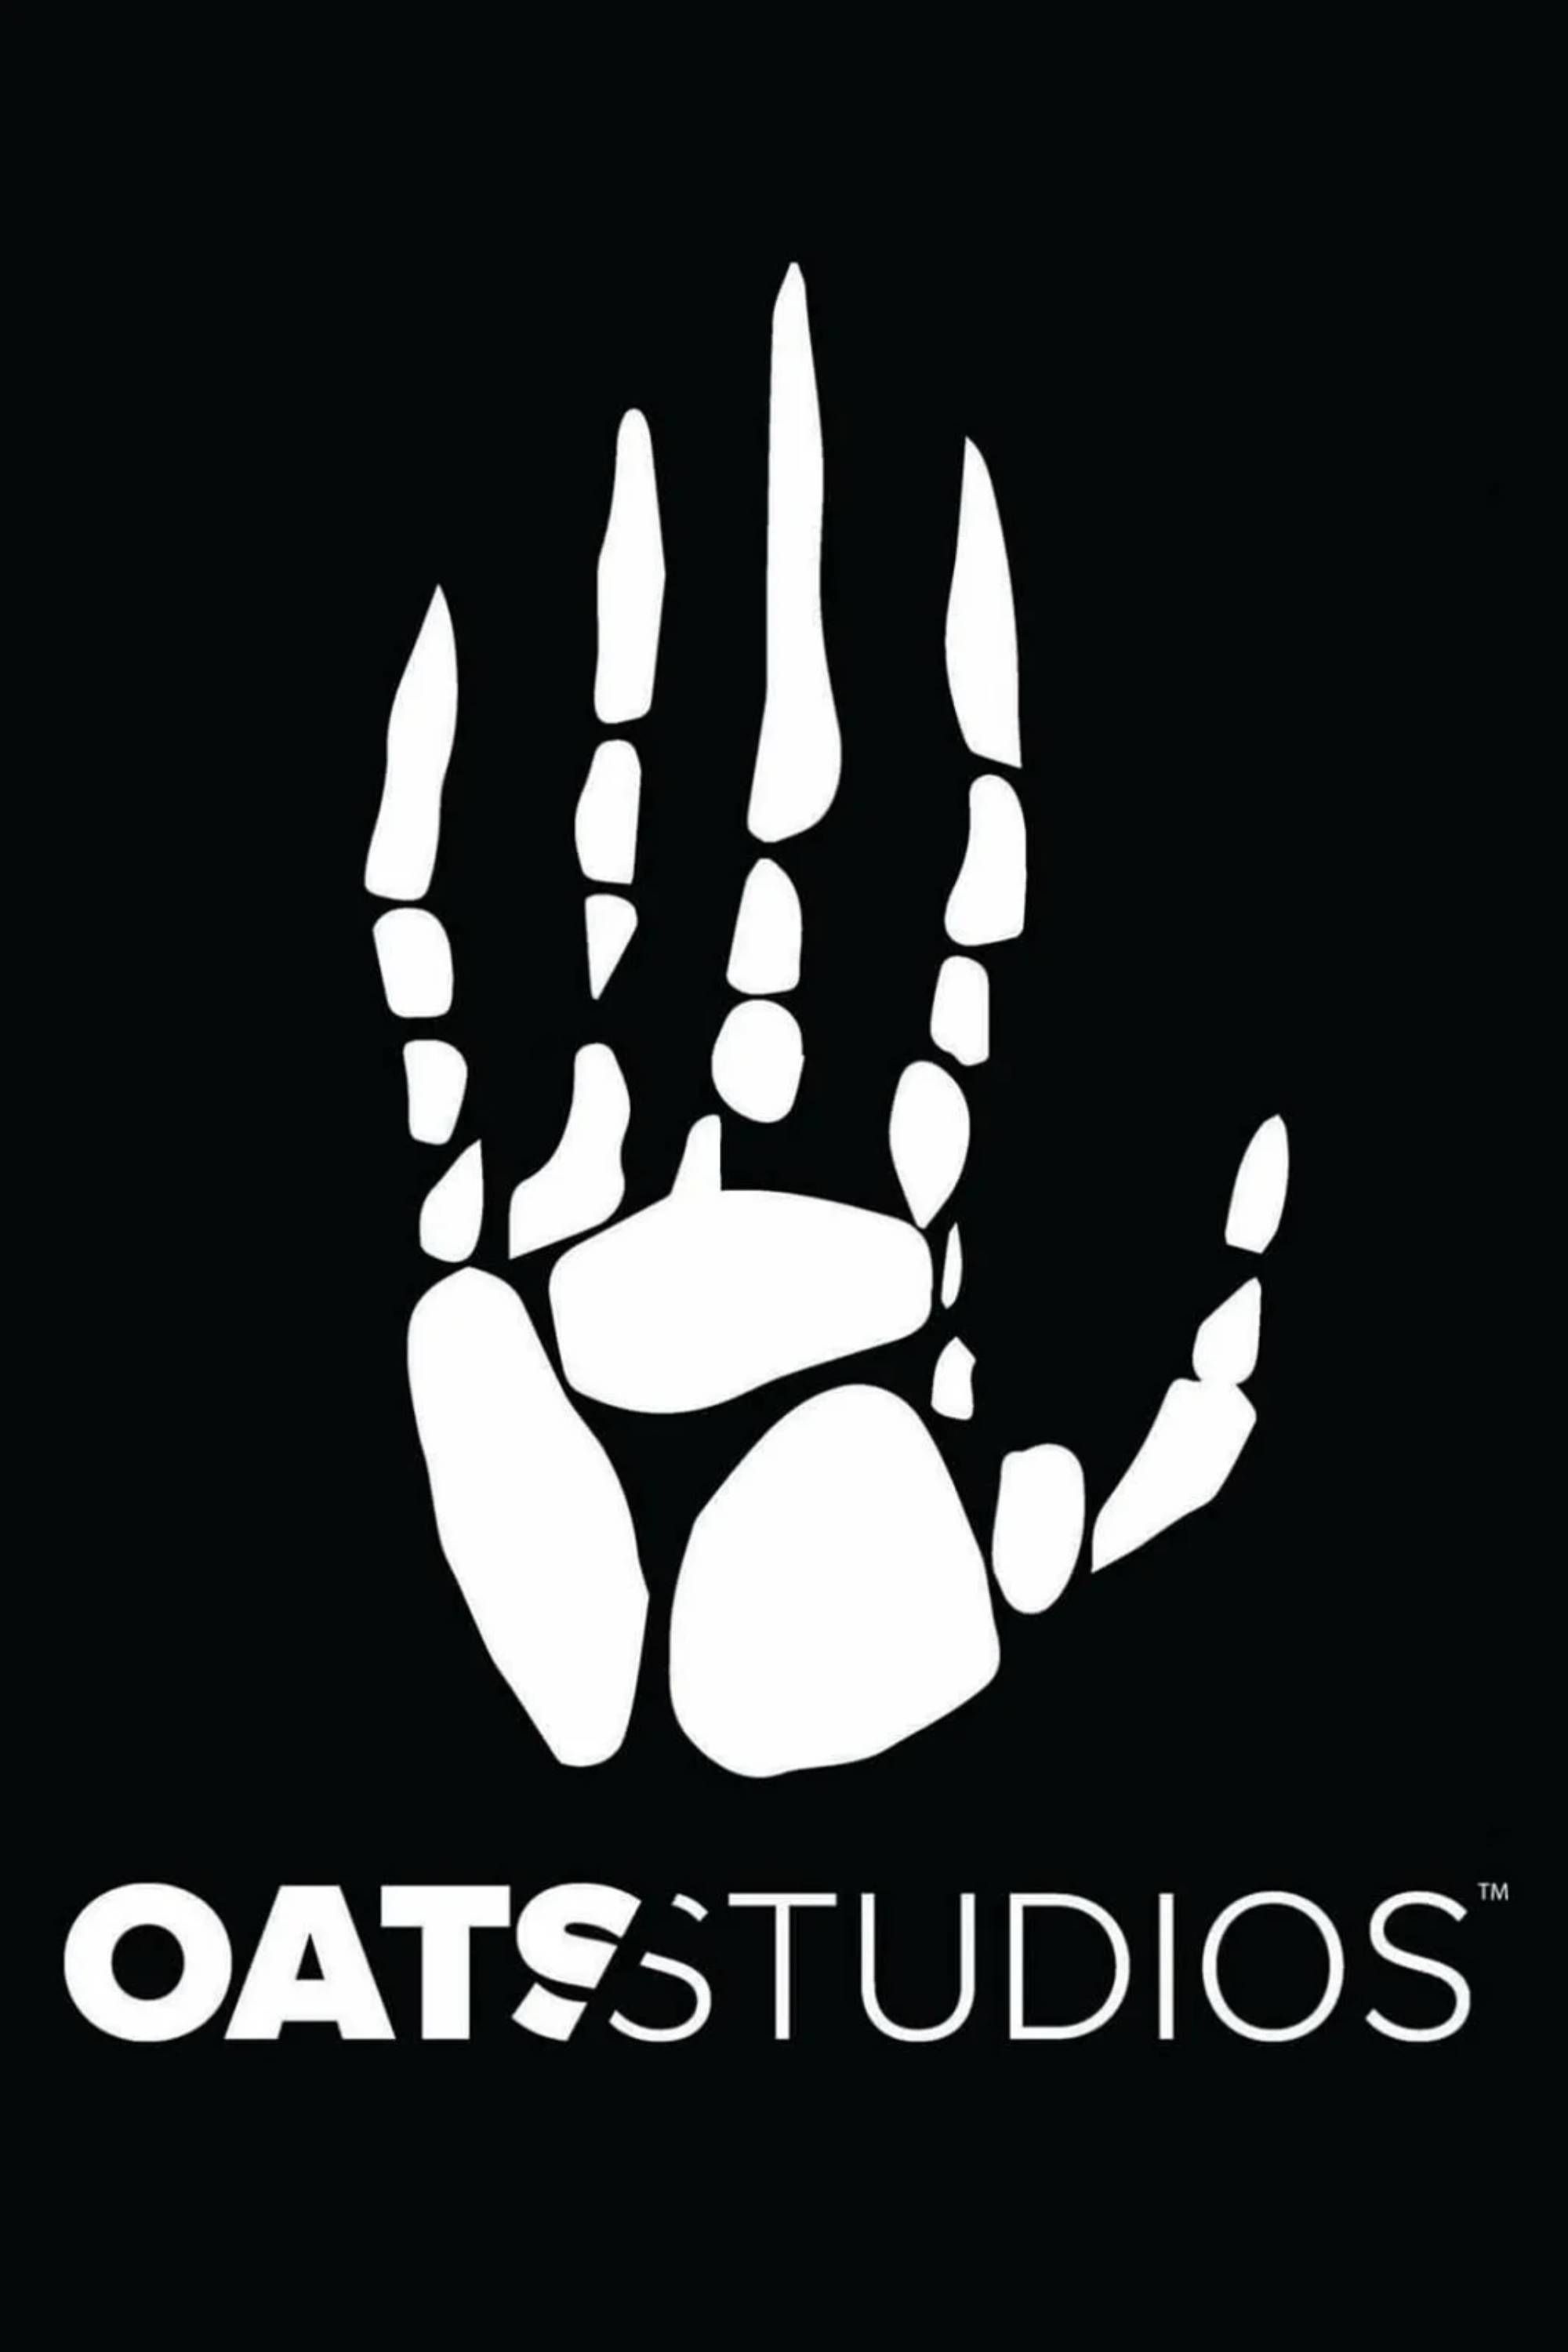 oats studio poster